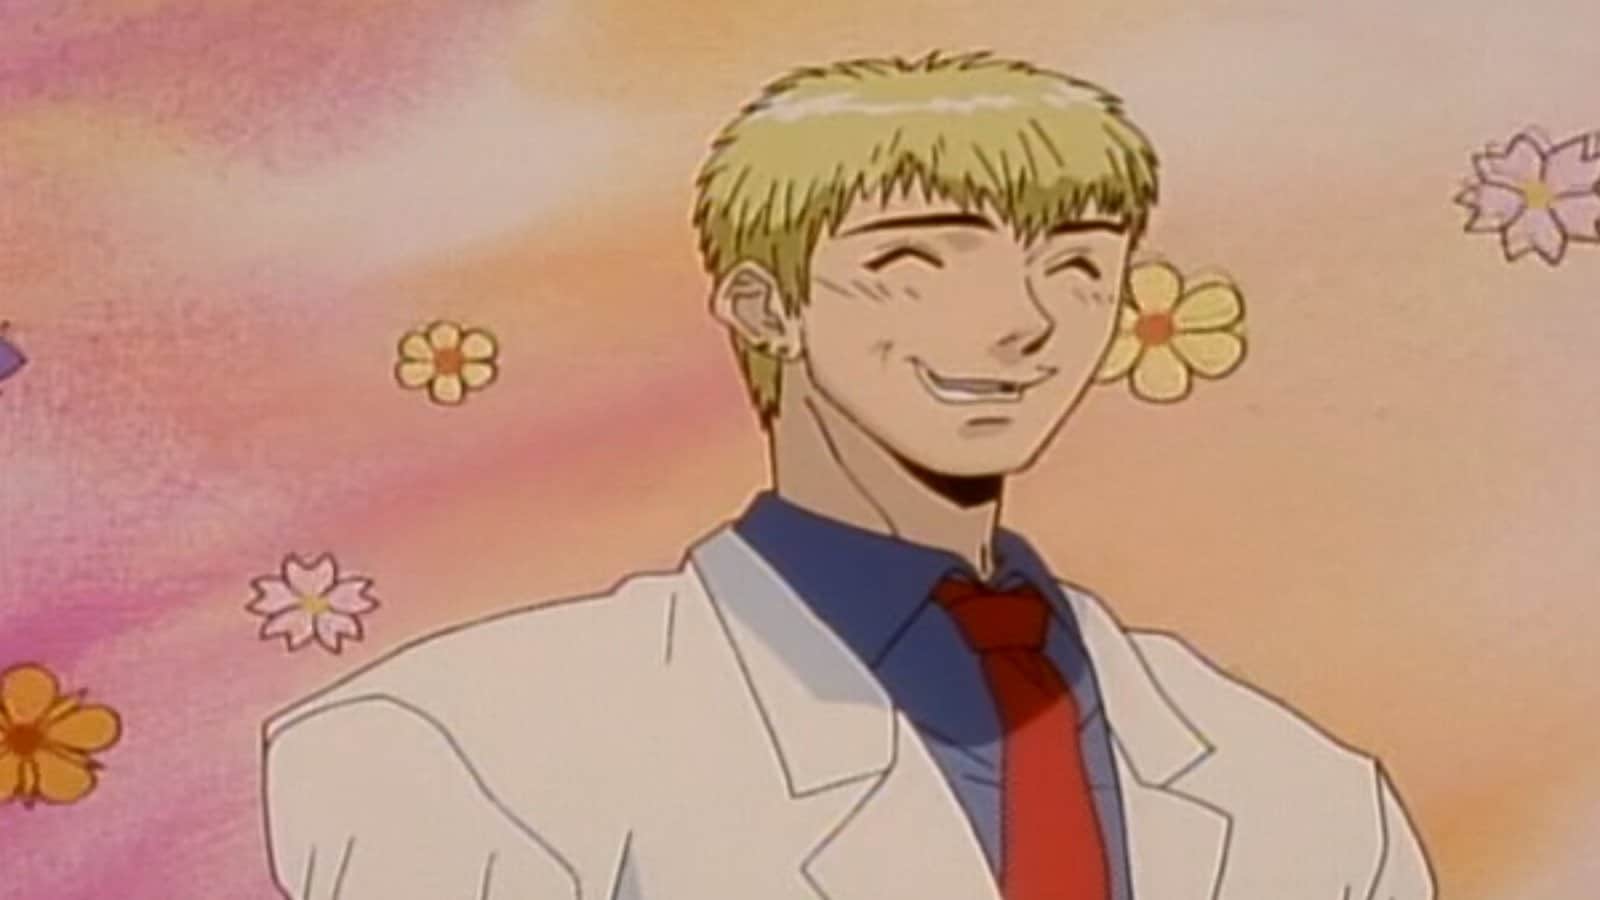 Onizuka, the main character from Great Teacher Onizuka, smiling.